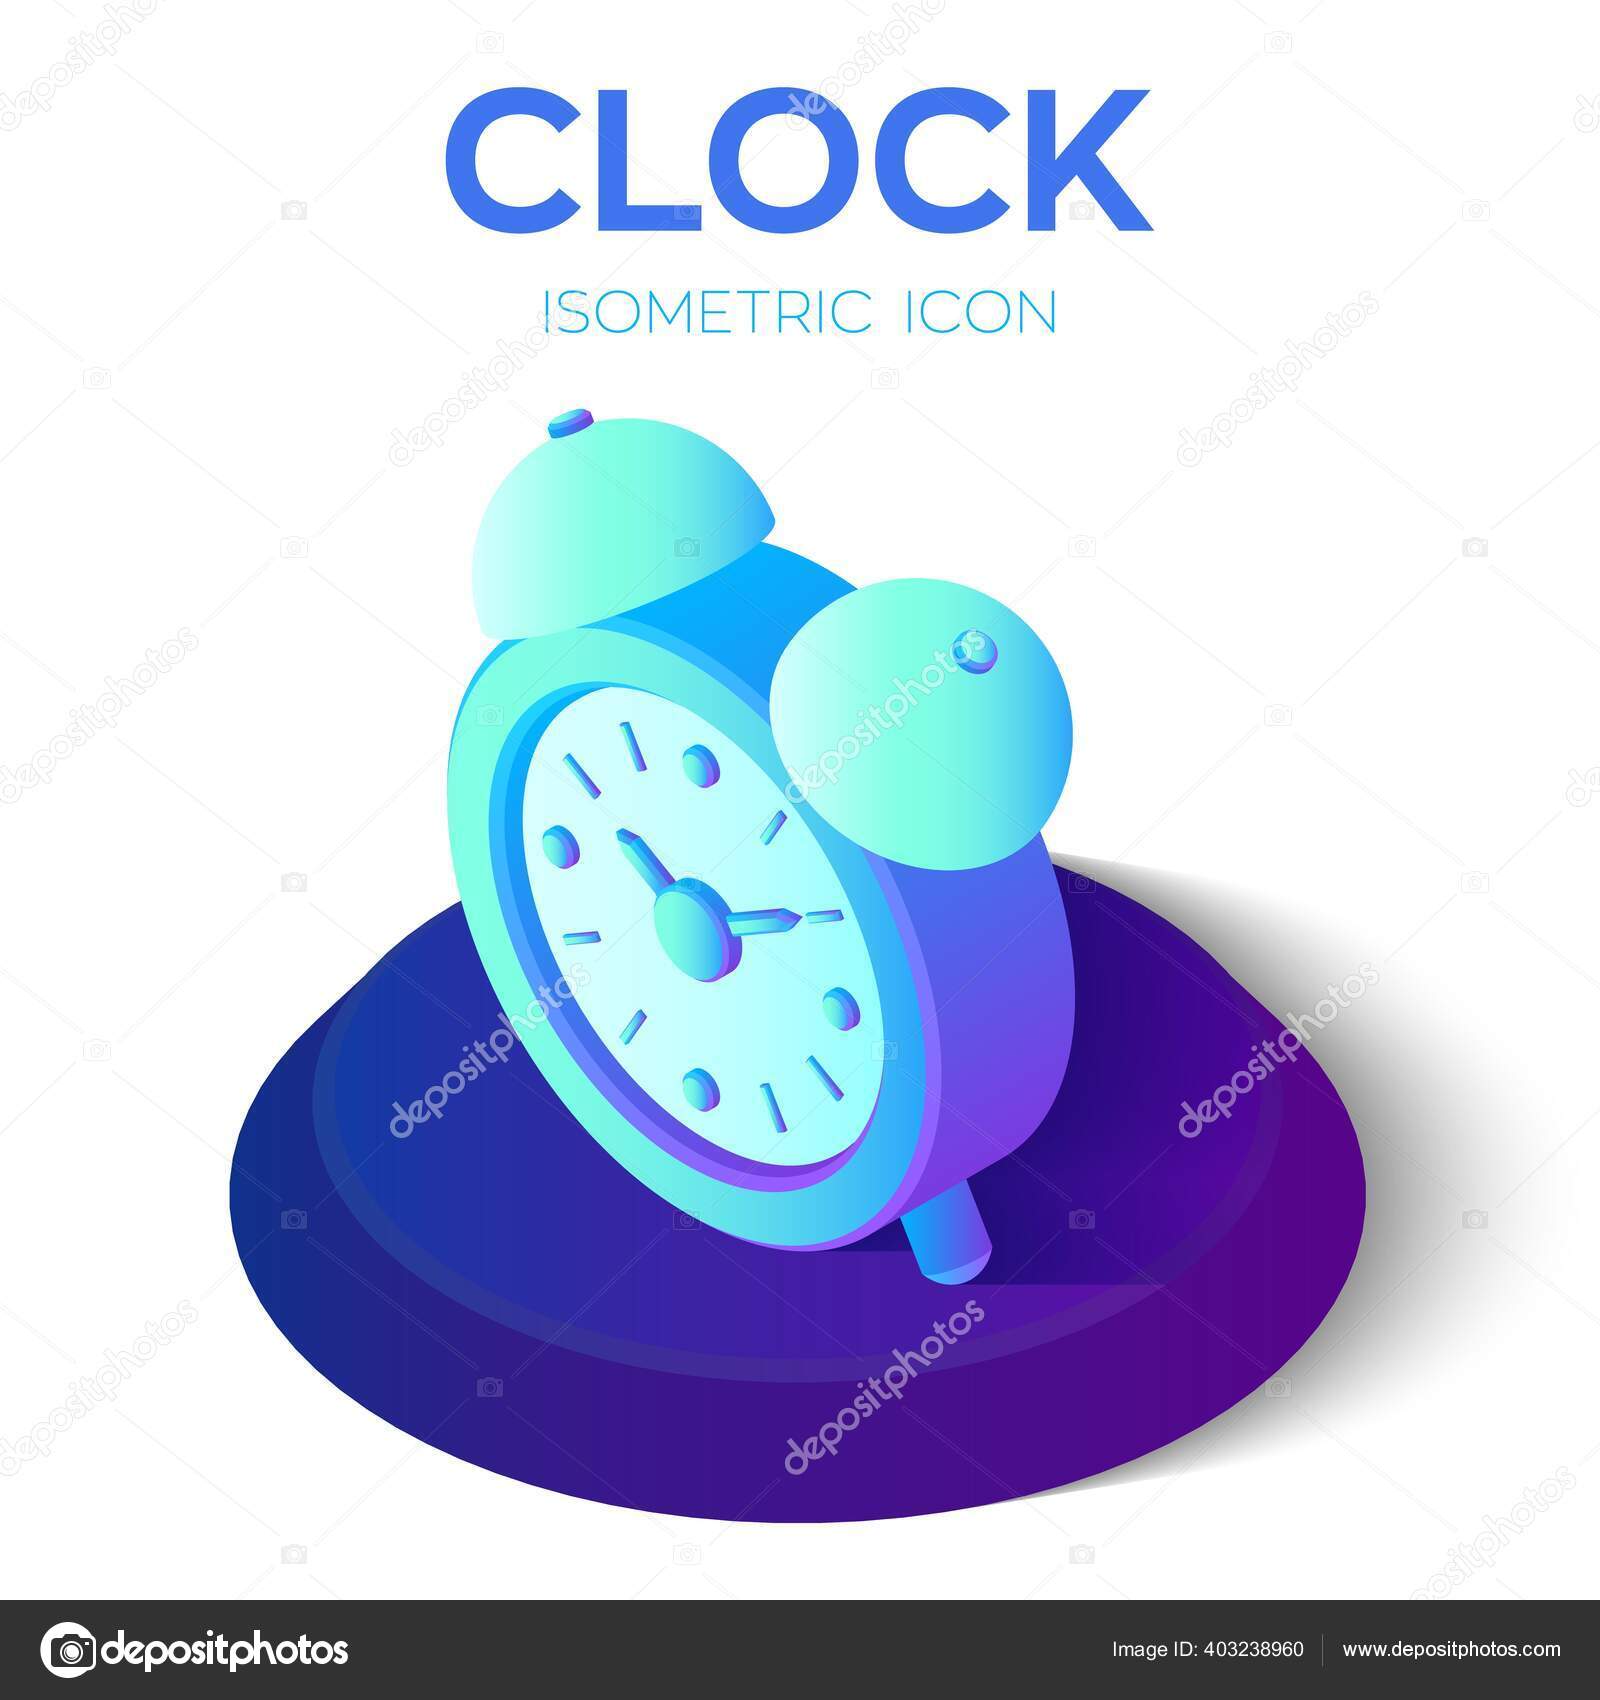 Alarm clock Vectors & Illustrations for Free Download